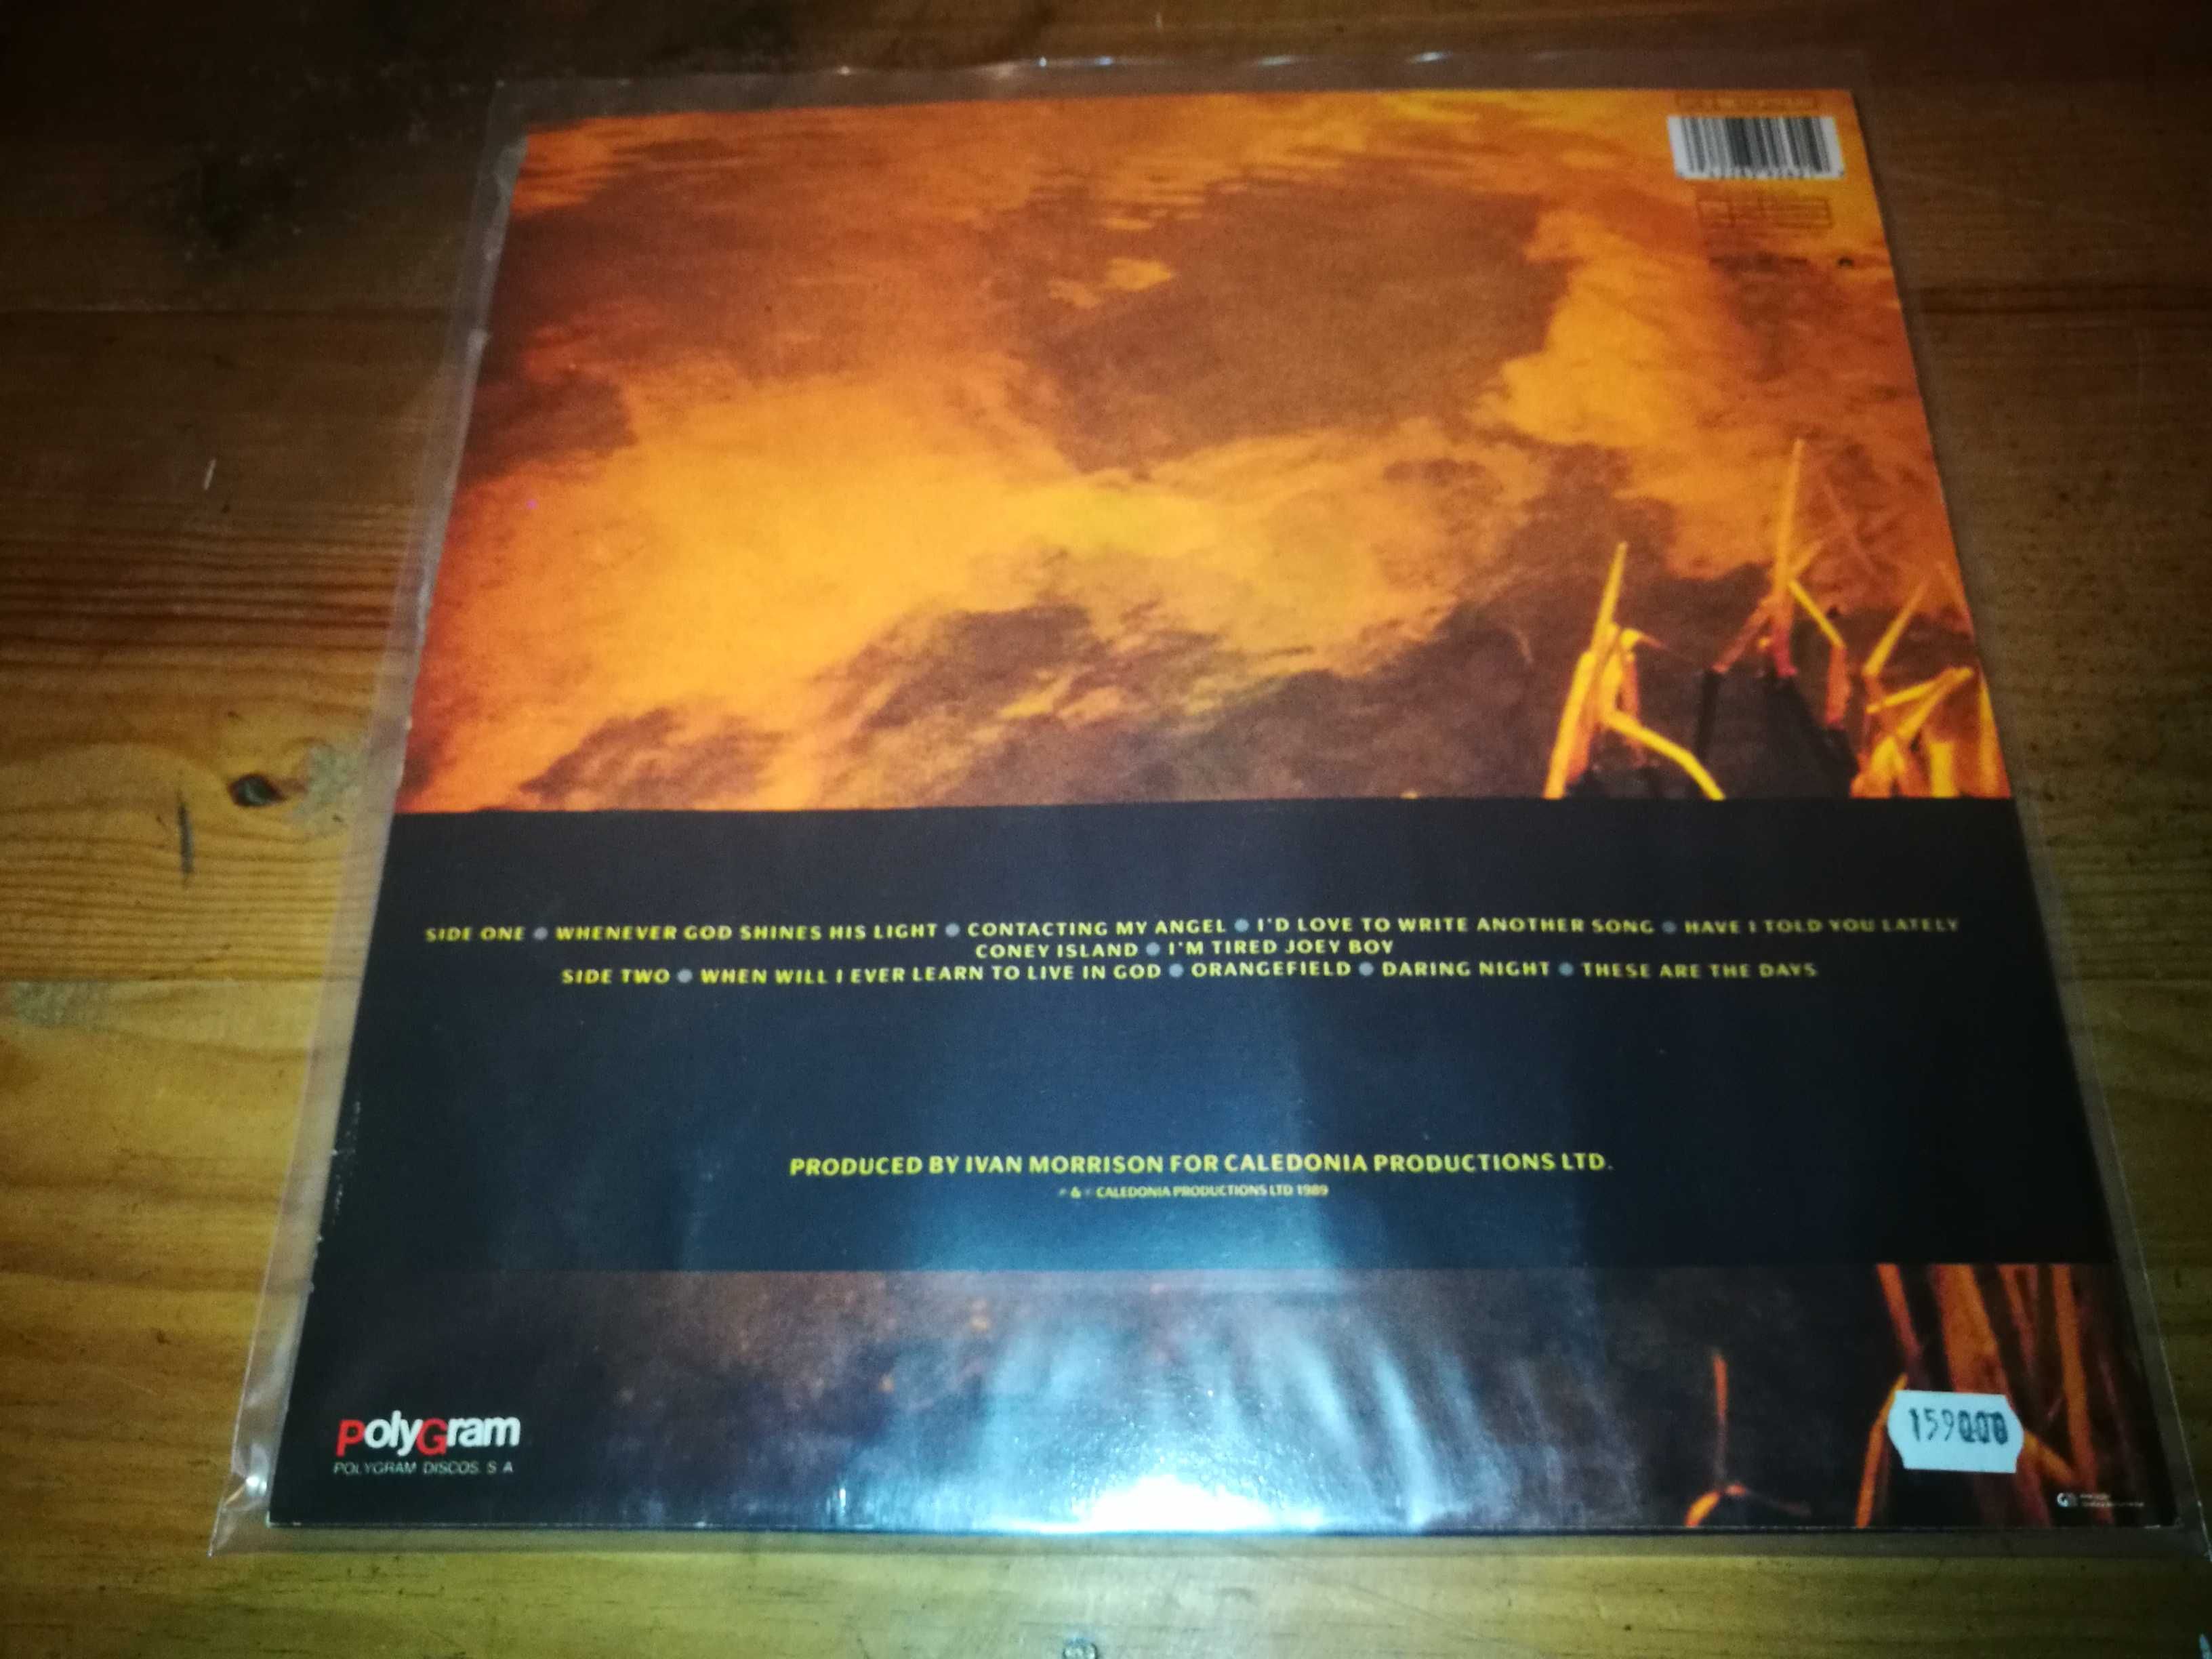 VAN   MORRISON (Folk Rock) Avalon Sunset   (Ed Port - 1989) LP